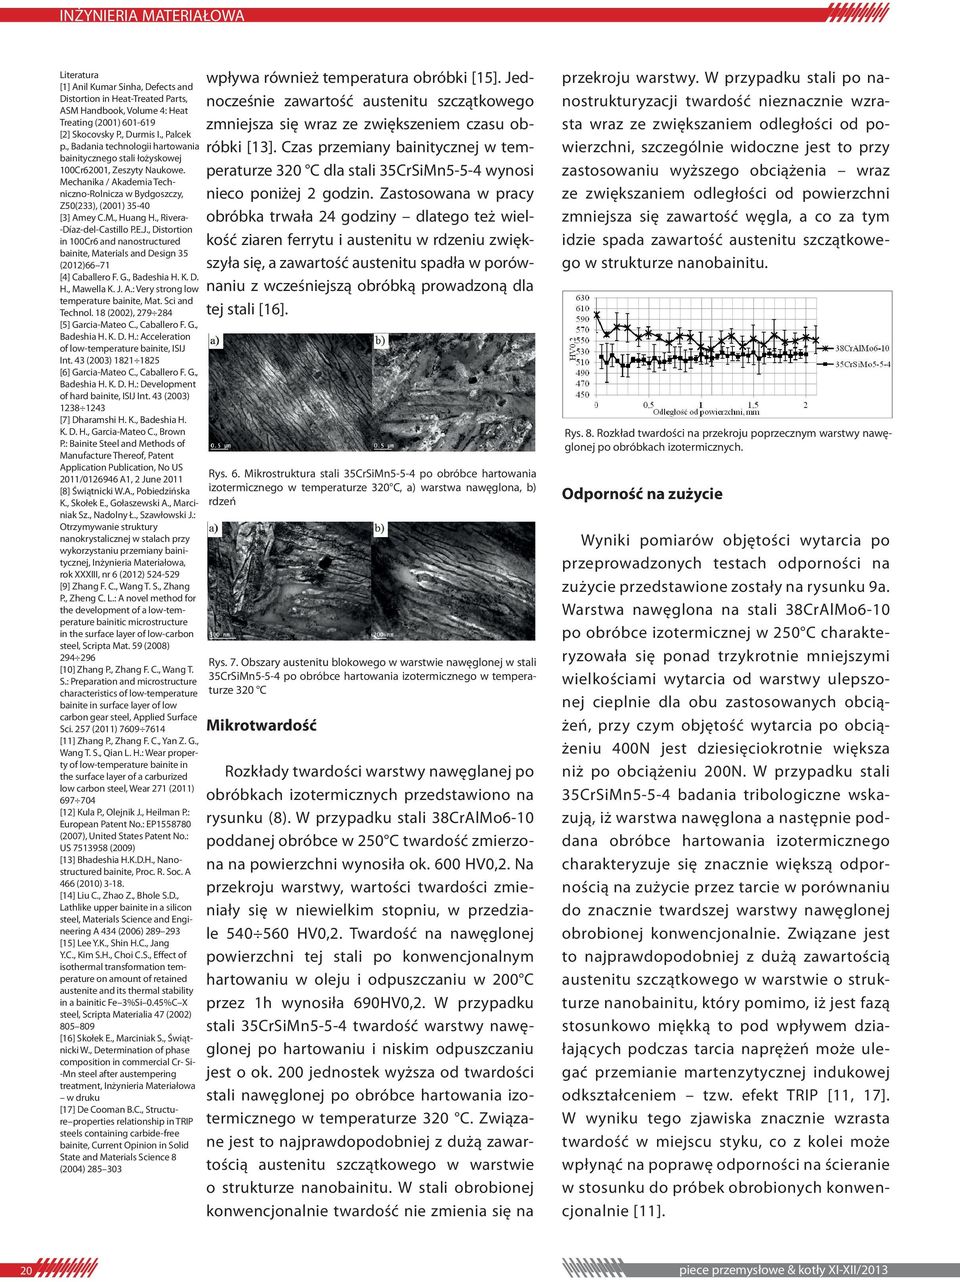 , Rivera- -Díaz-del-Castillo P.E.J., Distortion in 100Cr6 and nanostructured bainite, Materials and Design 35 (2012)66 71 [4] Caballero F. G., Badeshia H. K. D. H., Mawella K. J. A.